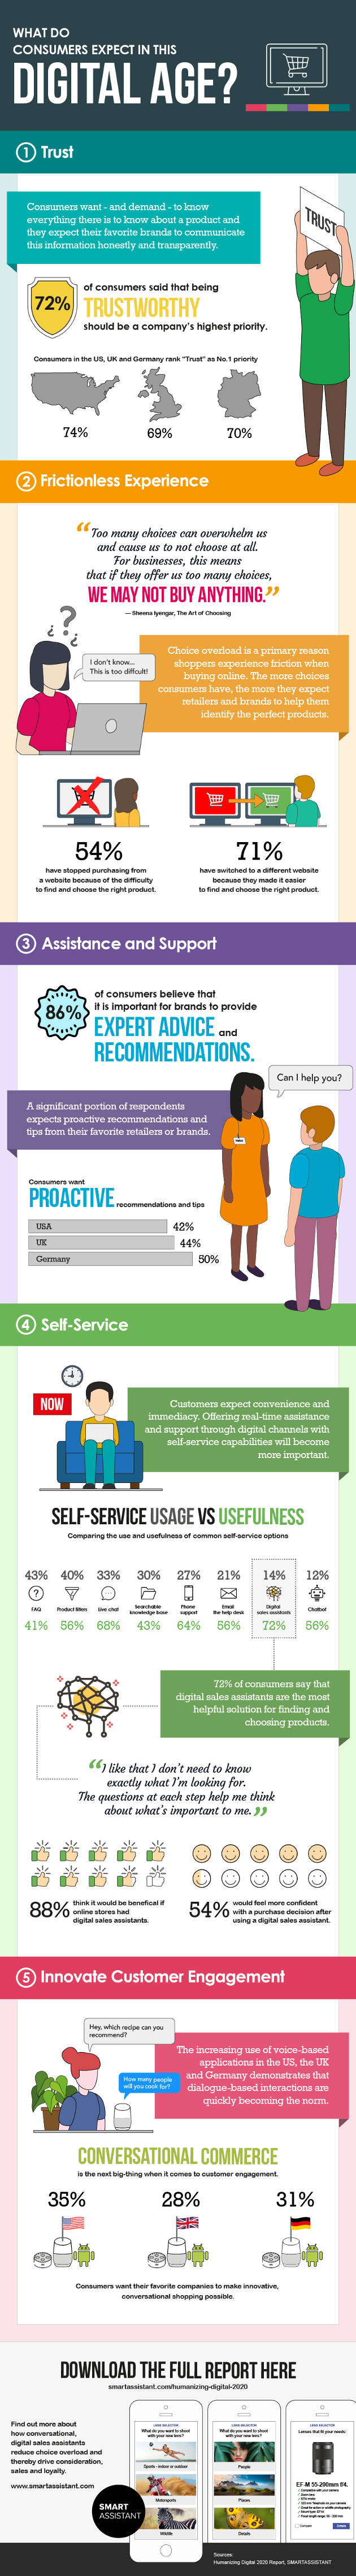 infographie sur les acheteurs e-commerce